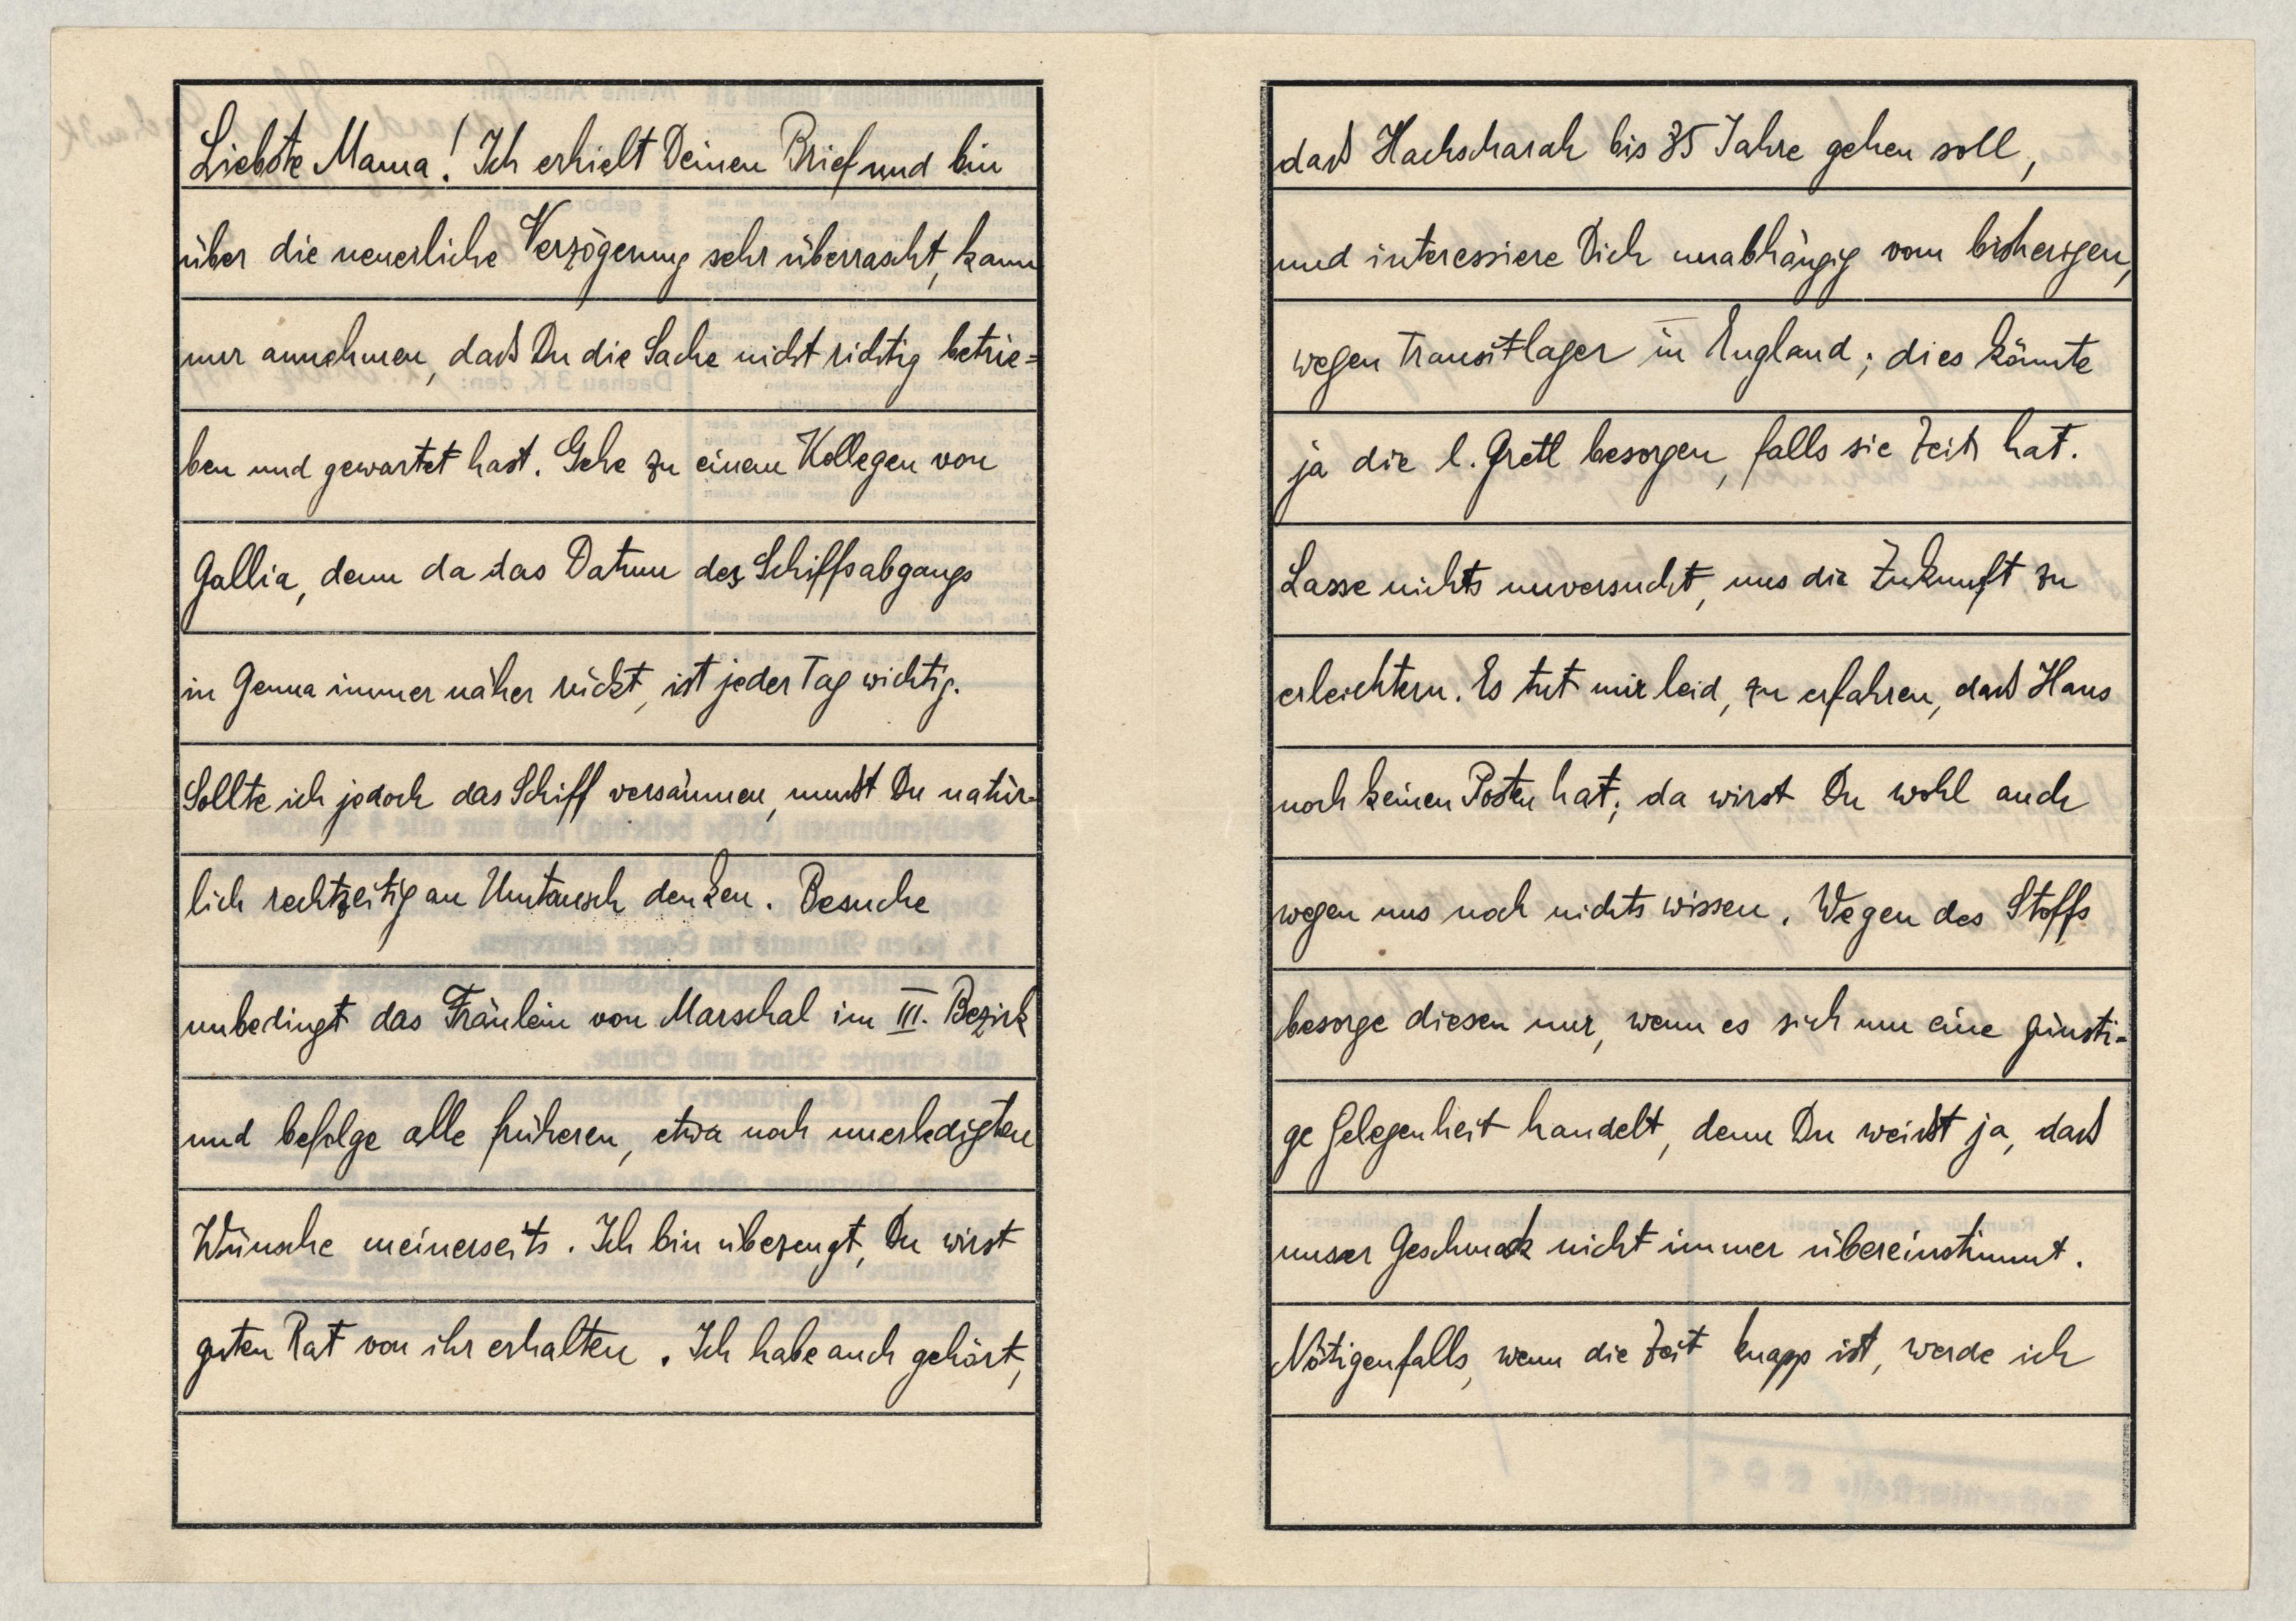 Eduard Elias, Dachau letter, 12 March 1939_002